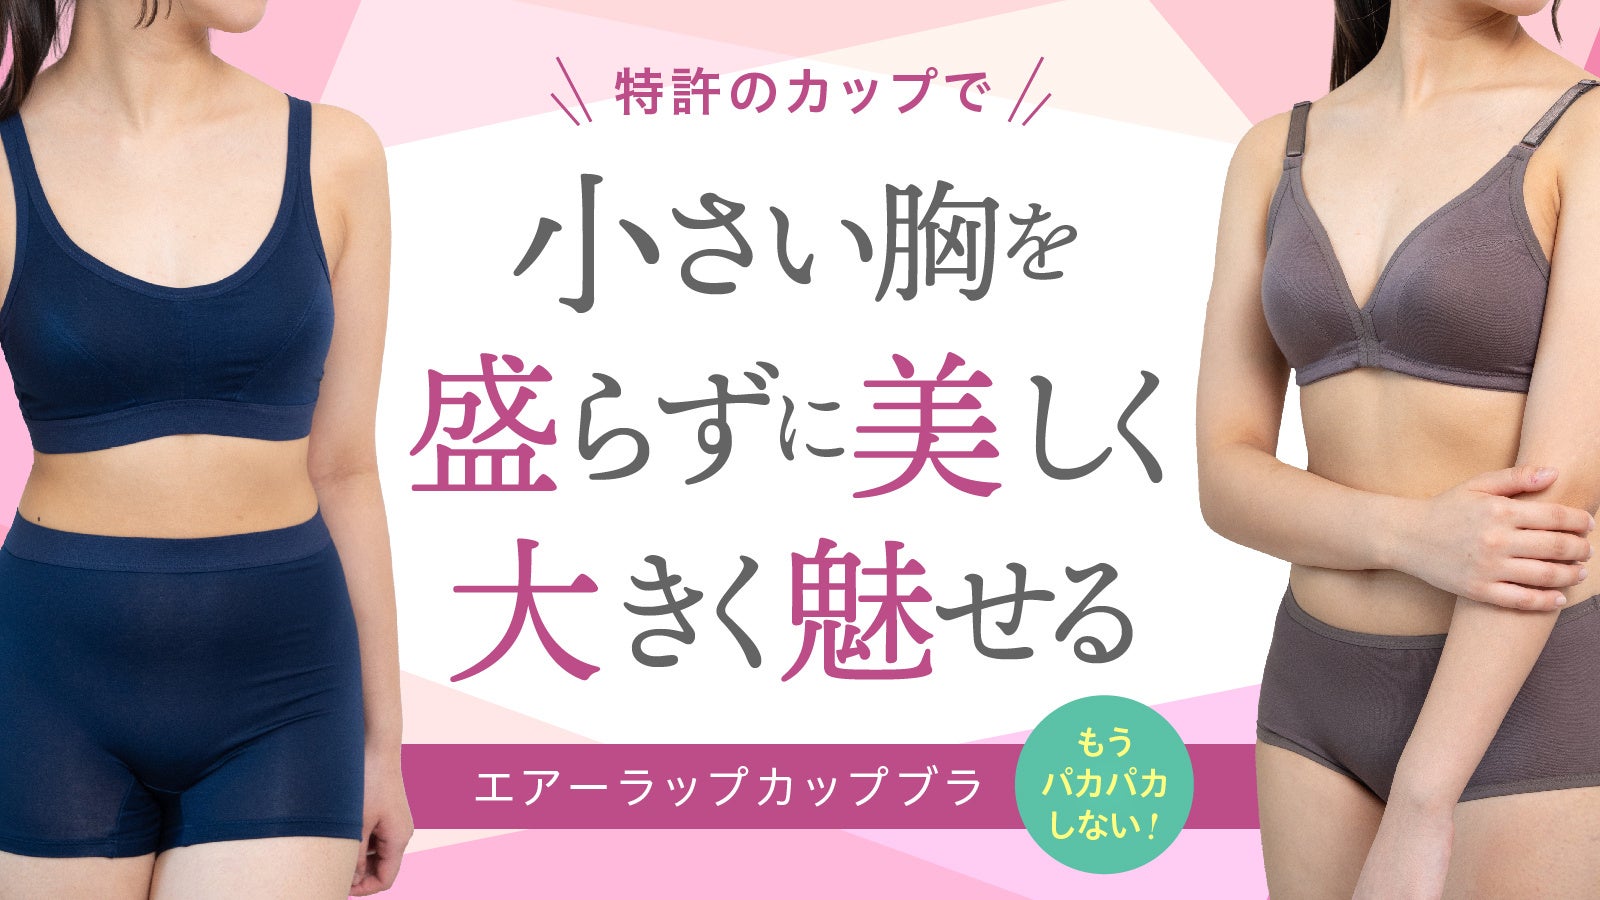 特許取得の画期的なブラジャー☆小さい胸のオシャレな女性向けに、これまでになかったブラジャーが発売されます。8 月 8 日から Makuake サイトにて発売開始！